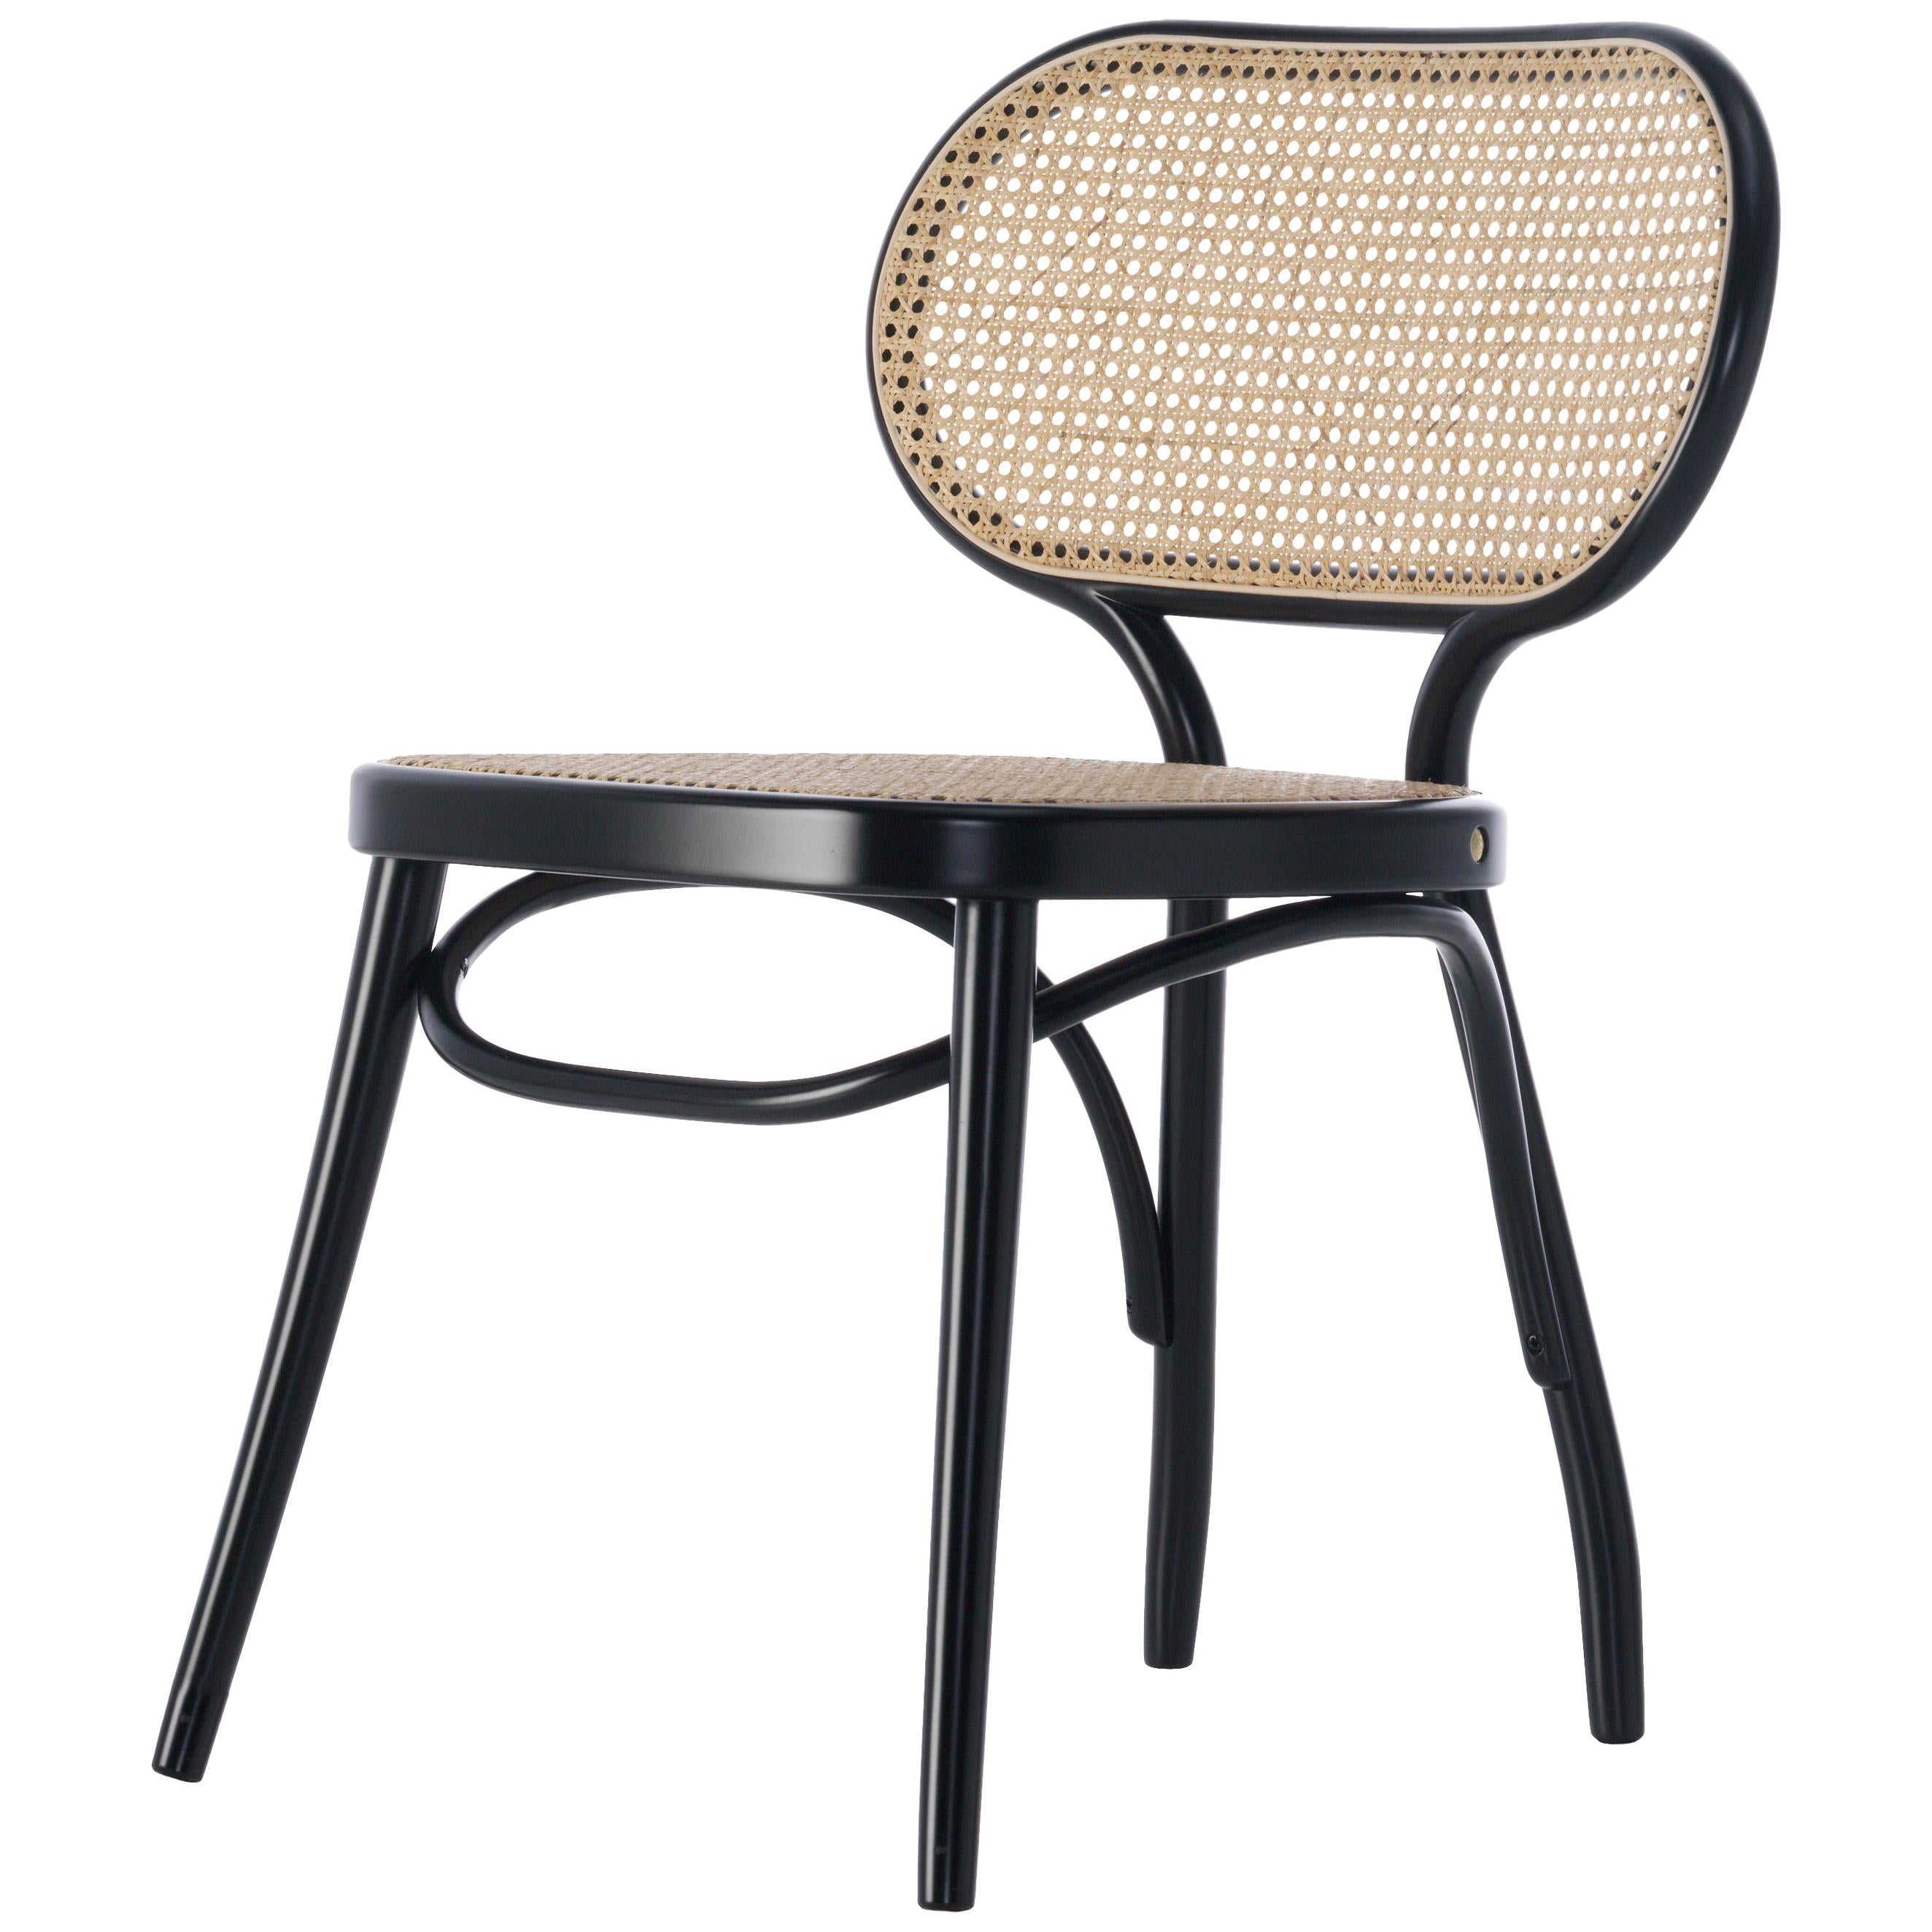 Gebrüder Thonet Vienna GmbH Bodystuhl Chair in Black with Woven Cane Seat